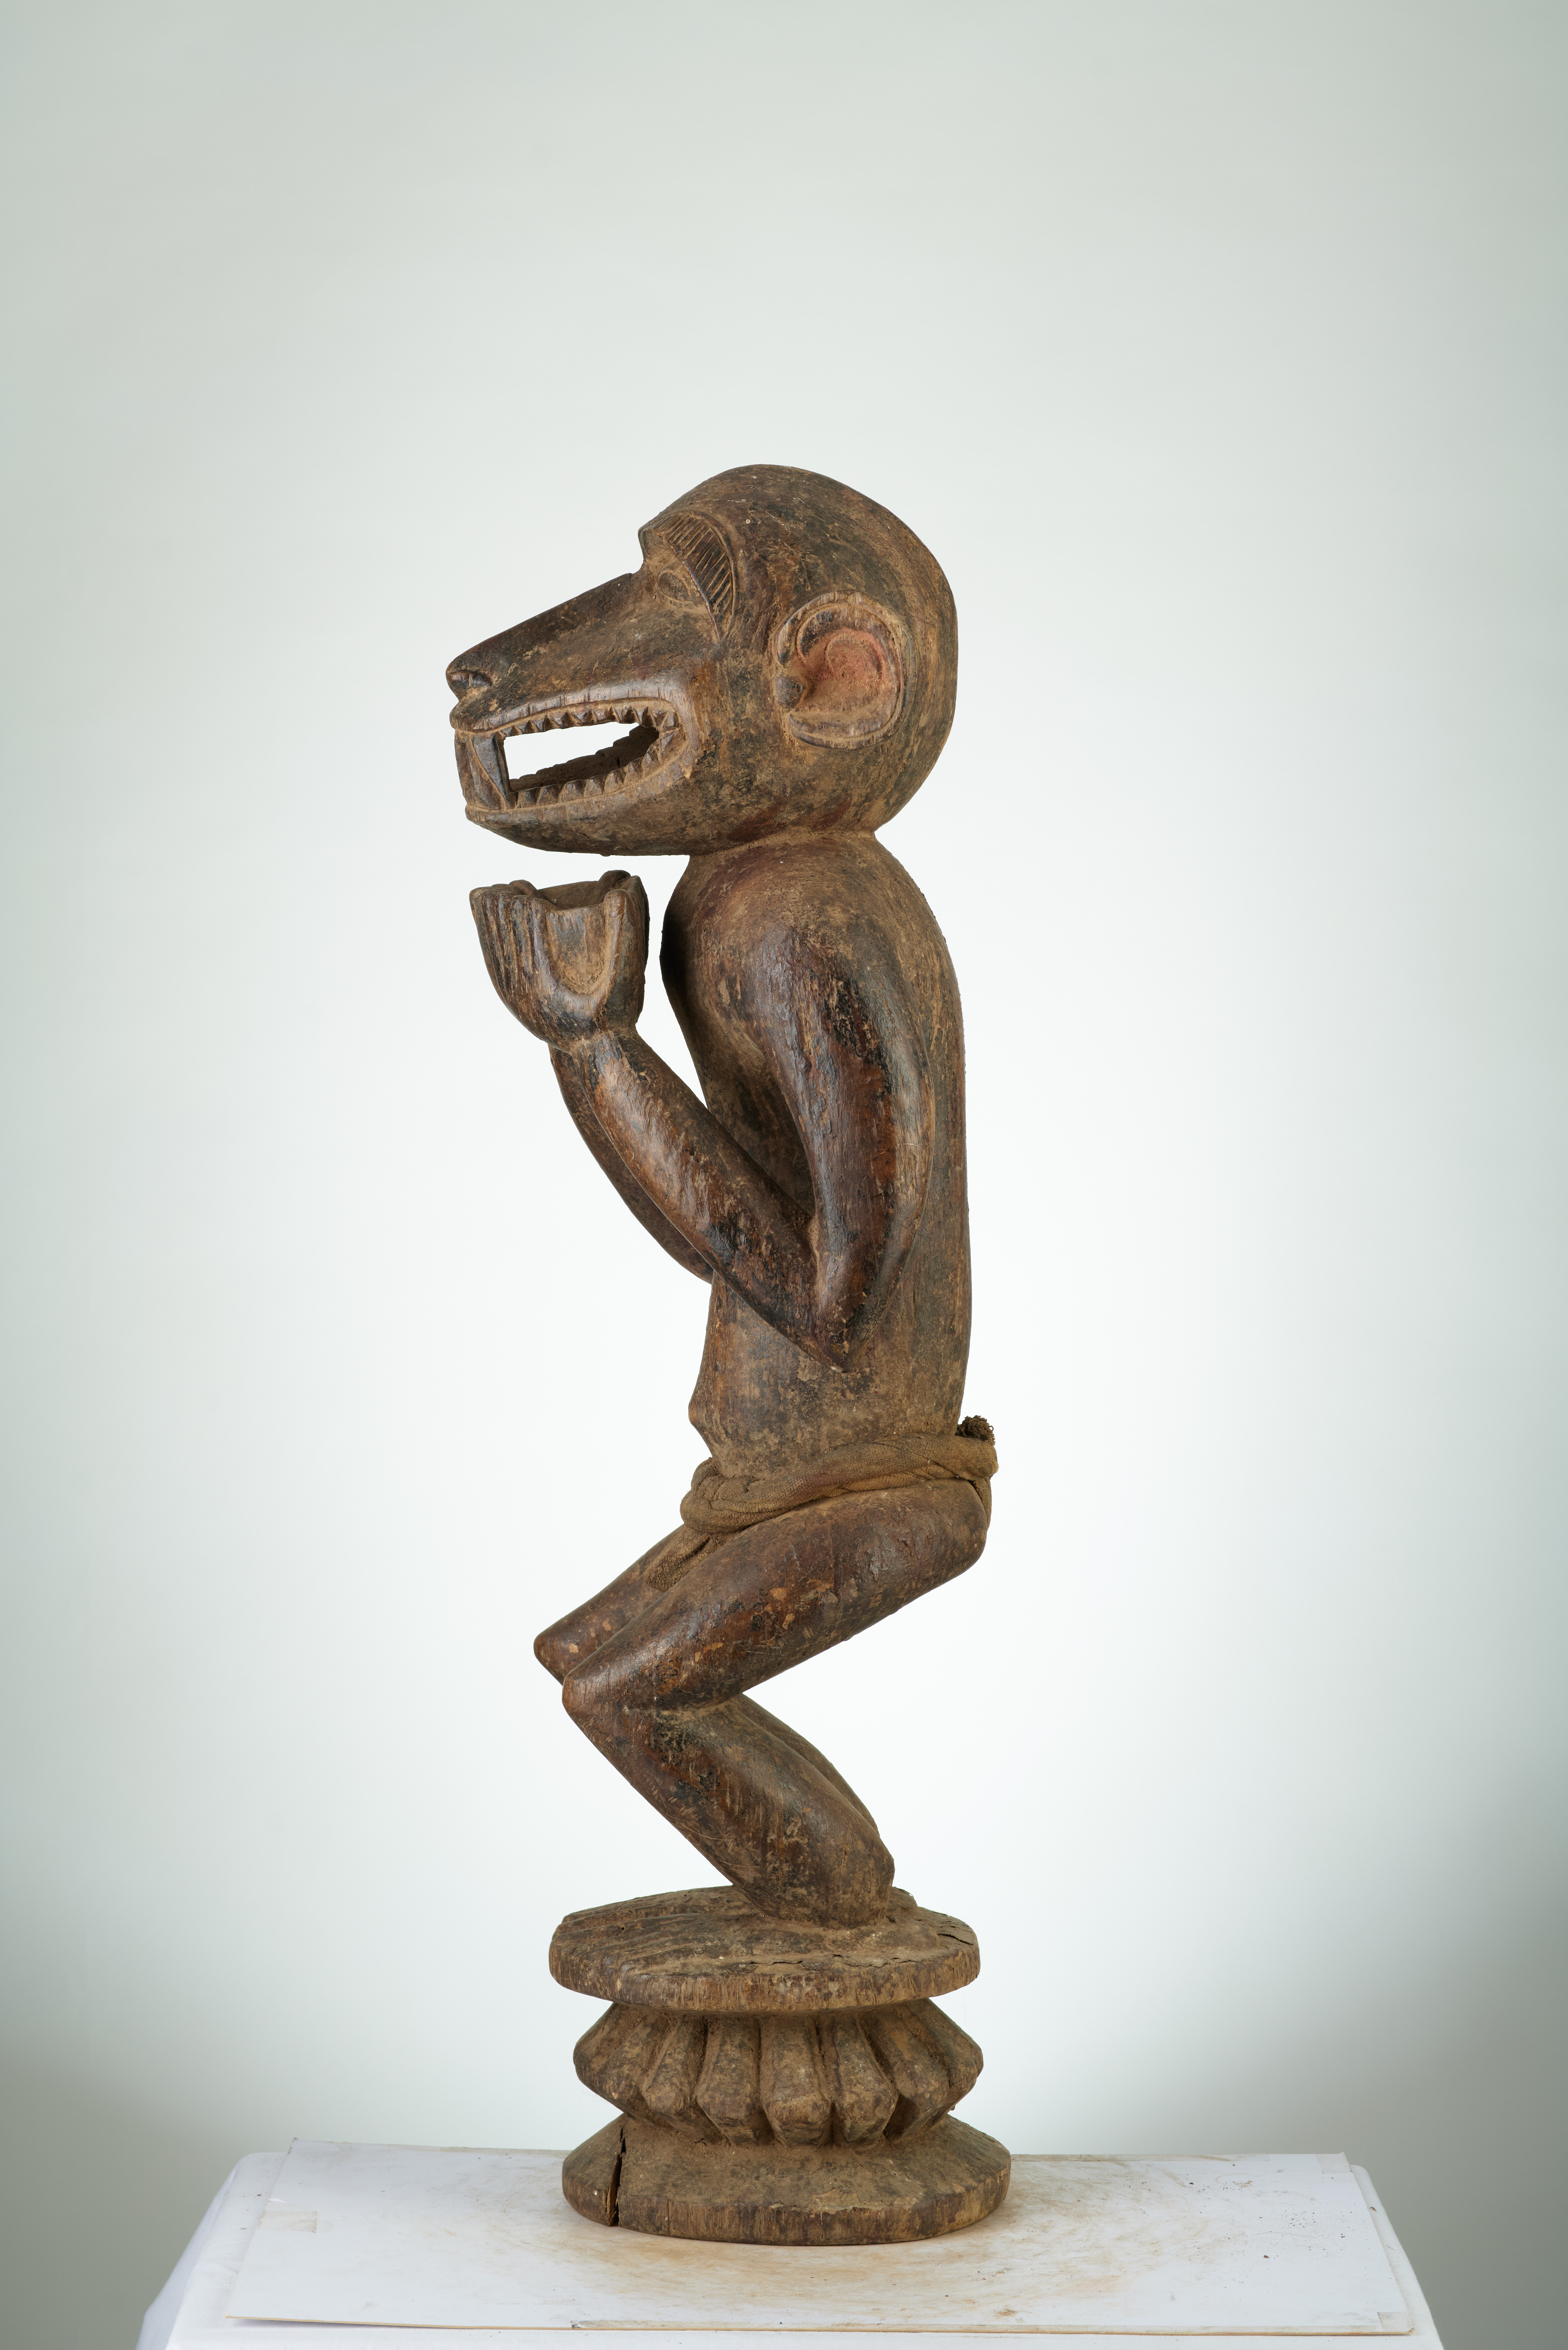 Baoulé (singe debout), d`afrique : MALI, statuette Baoulé (singe debout), masque ancien africain Baoulé (singe debout), art du MALI - Art Africain, collection privées Belgique. Statue africaine de la tribu des Baoulé (singe debout), provenant du MALI, 1872:Porteur de coupe mi homme -mi singe.Il a une coupe dans les mains pour recevoir des offrandes voirn°749 (pères blancs Paris)

Een beker drager half mens -half aap.Hij draagt een beker met beide handen om offrandes te bekomen. zie n°749. art,culture,masque,statue,statuette,pot,ivoire,exposition,expo,masque original,masques,statues,statuettes,pots,expositions,expo,masques originaux,collectionneur d`art,art africain,culture africaine,masque africain,statue africaine,statuette africaine,pot africain,ivoire africain,exposition africain,expo africain,masque origina africainl,masques africains,statues africaines,statuettes africaines,pots africains,expositions africaines,expo africaines,masques originaux  africains,collectionneur d`art africain